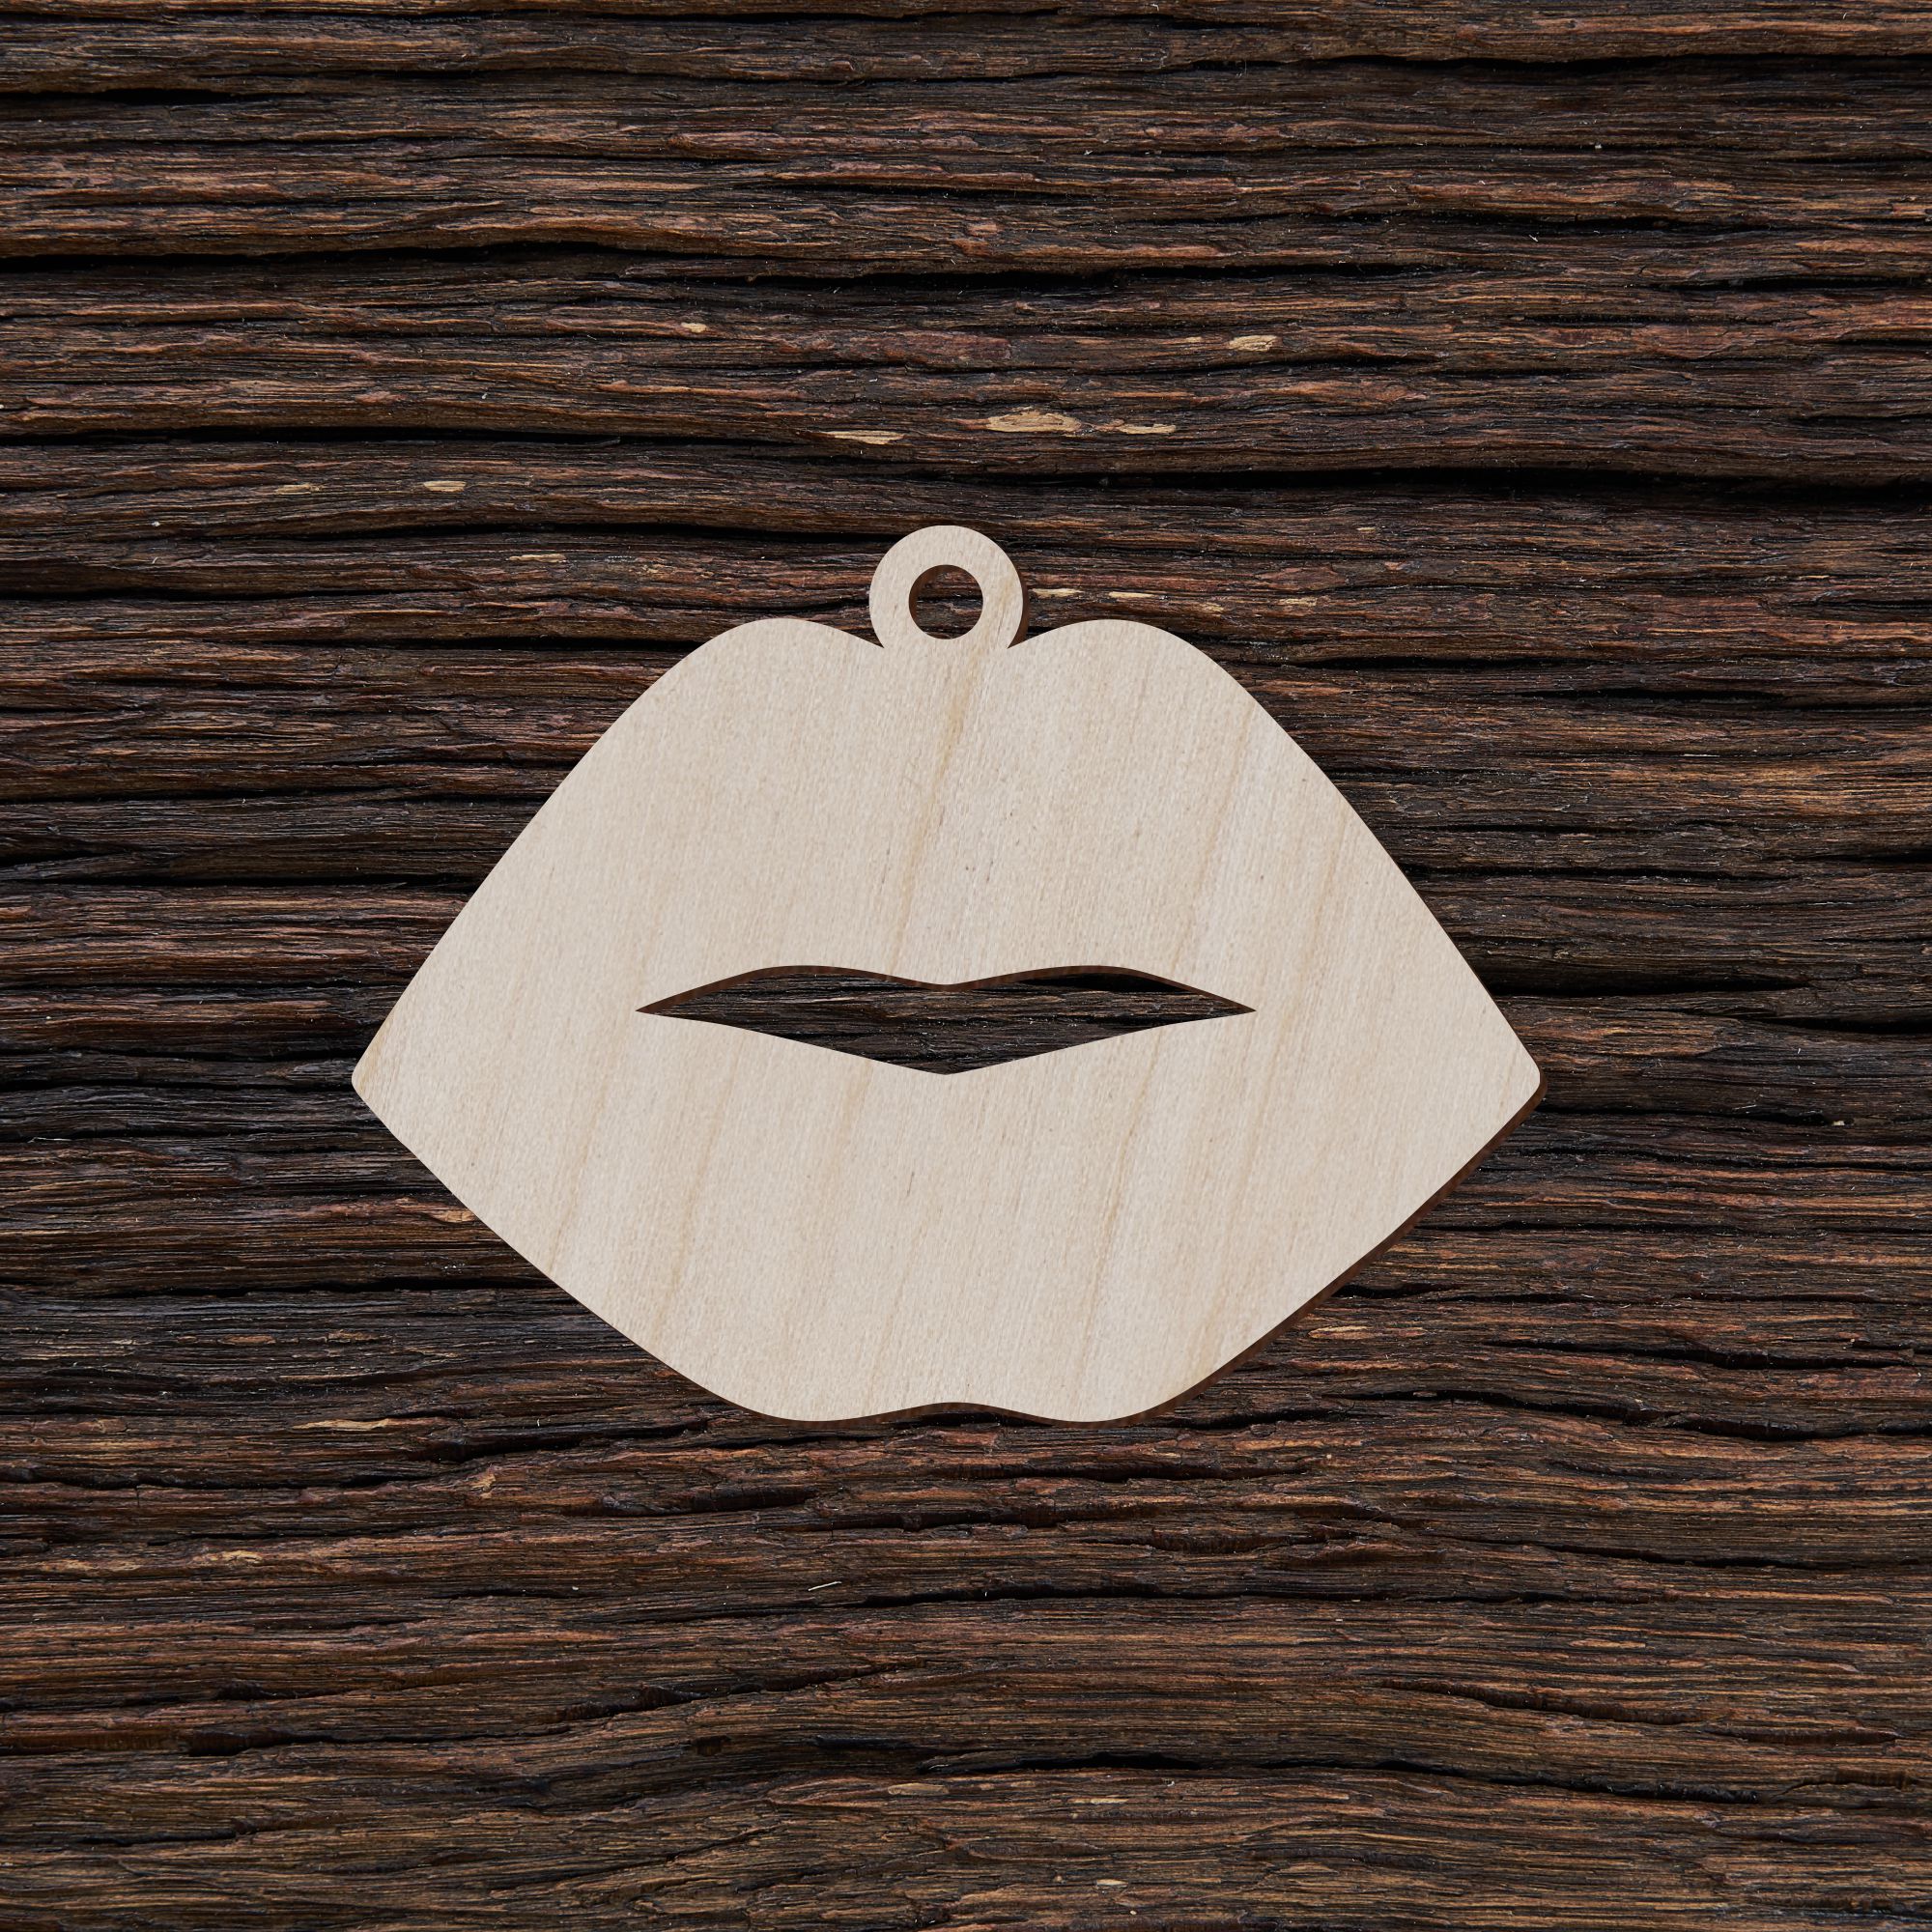 Lūpų formos auskarai - medinis gaminys, pjautas lazeriu - dekoravimui ir dažymui